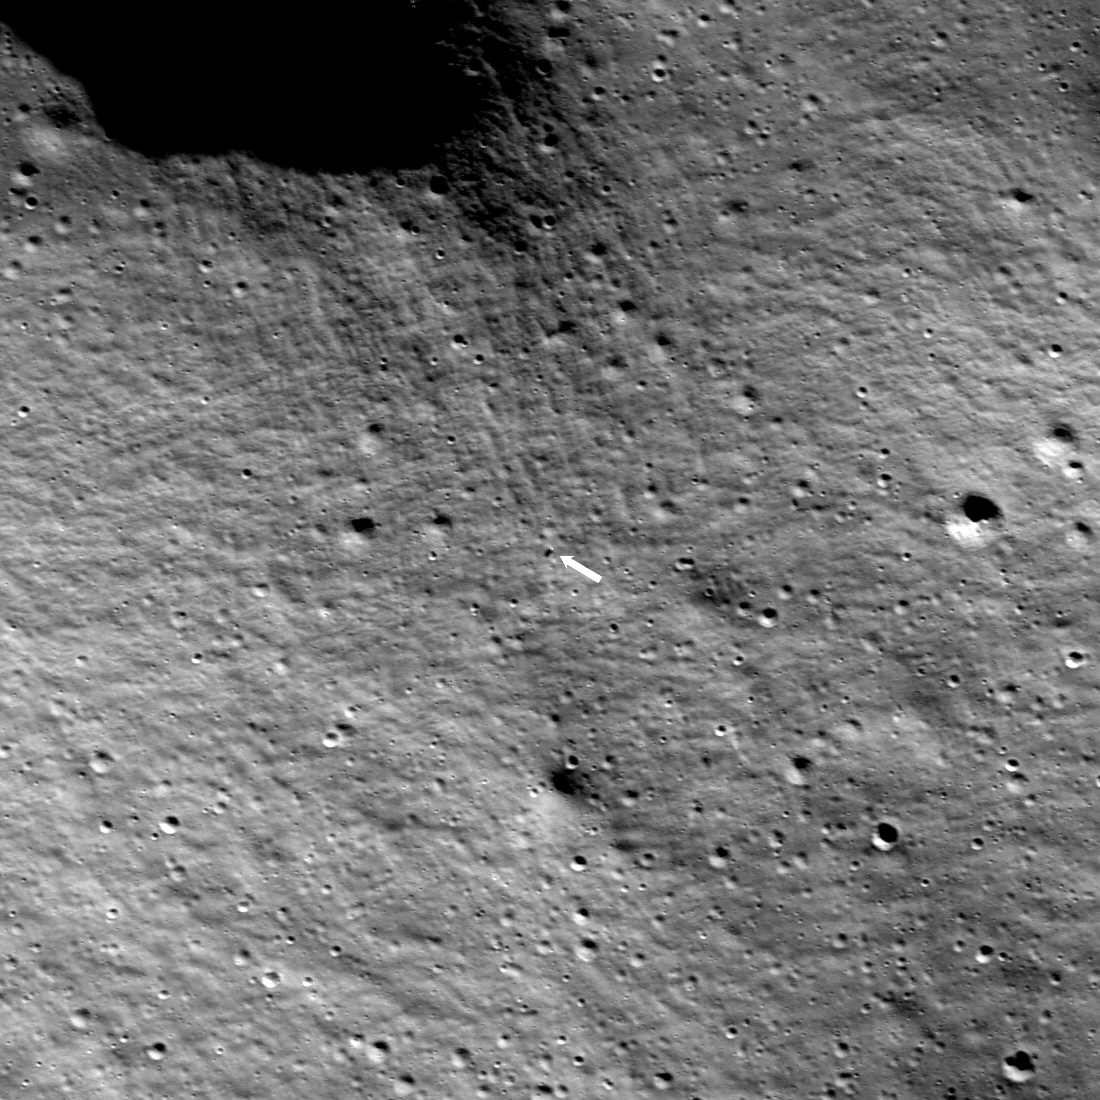 LRO photographie Odysseus couché sur la Lune